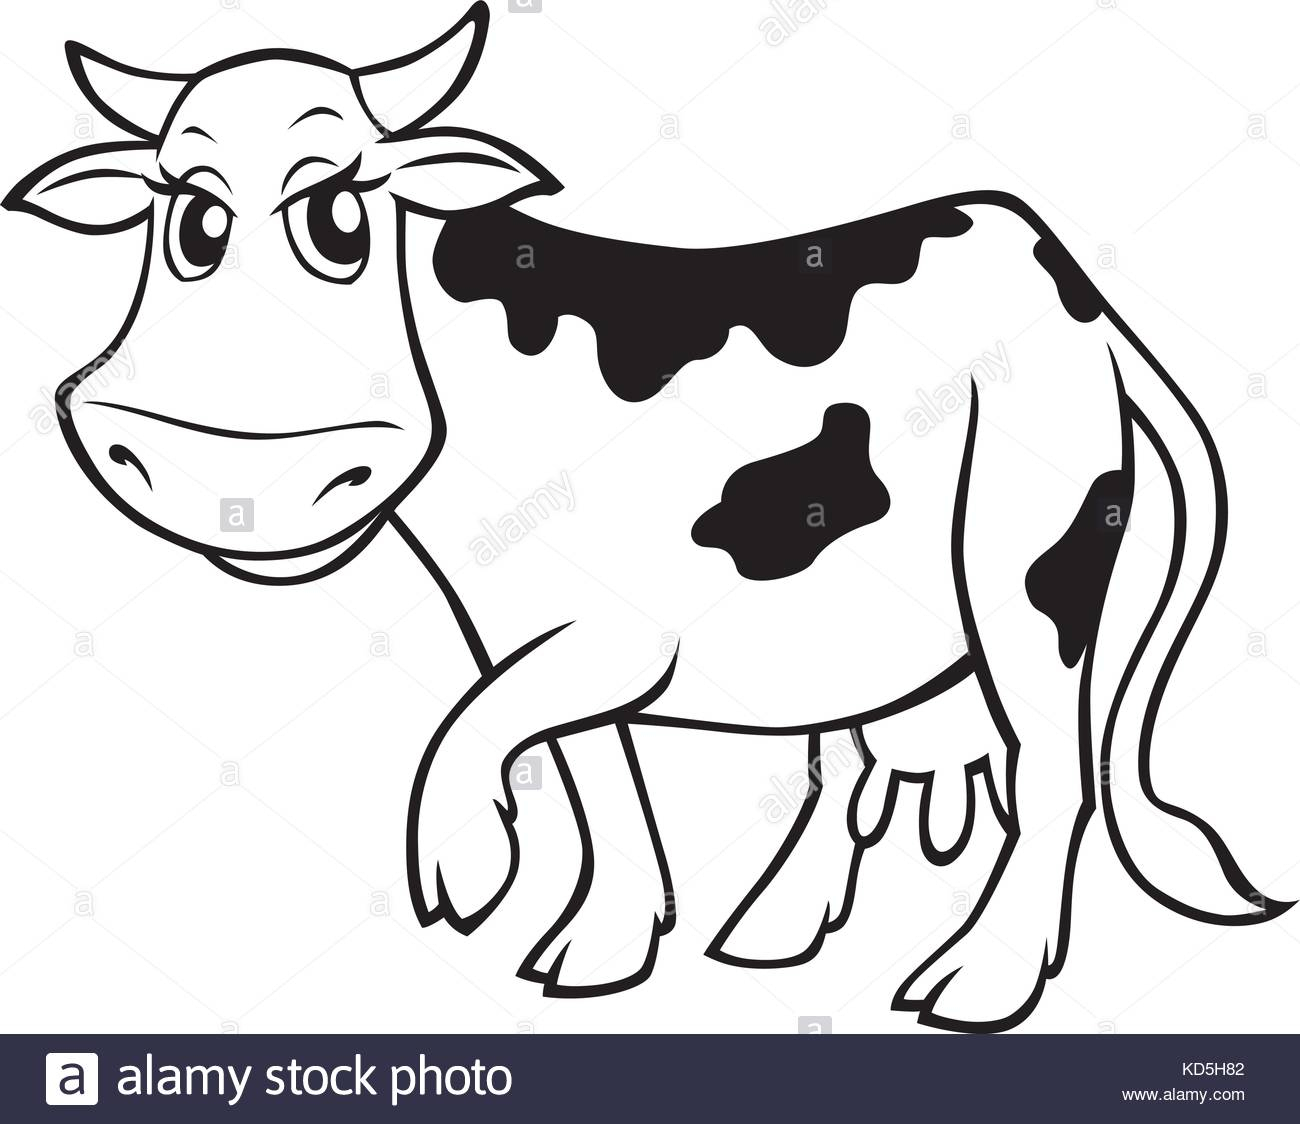 Злая корова рисунок карандашом для детей